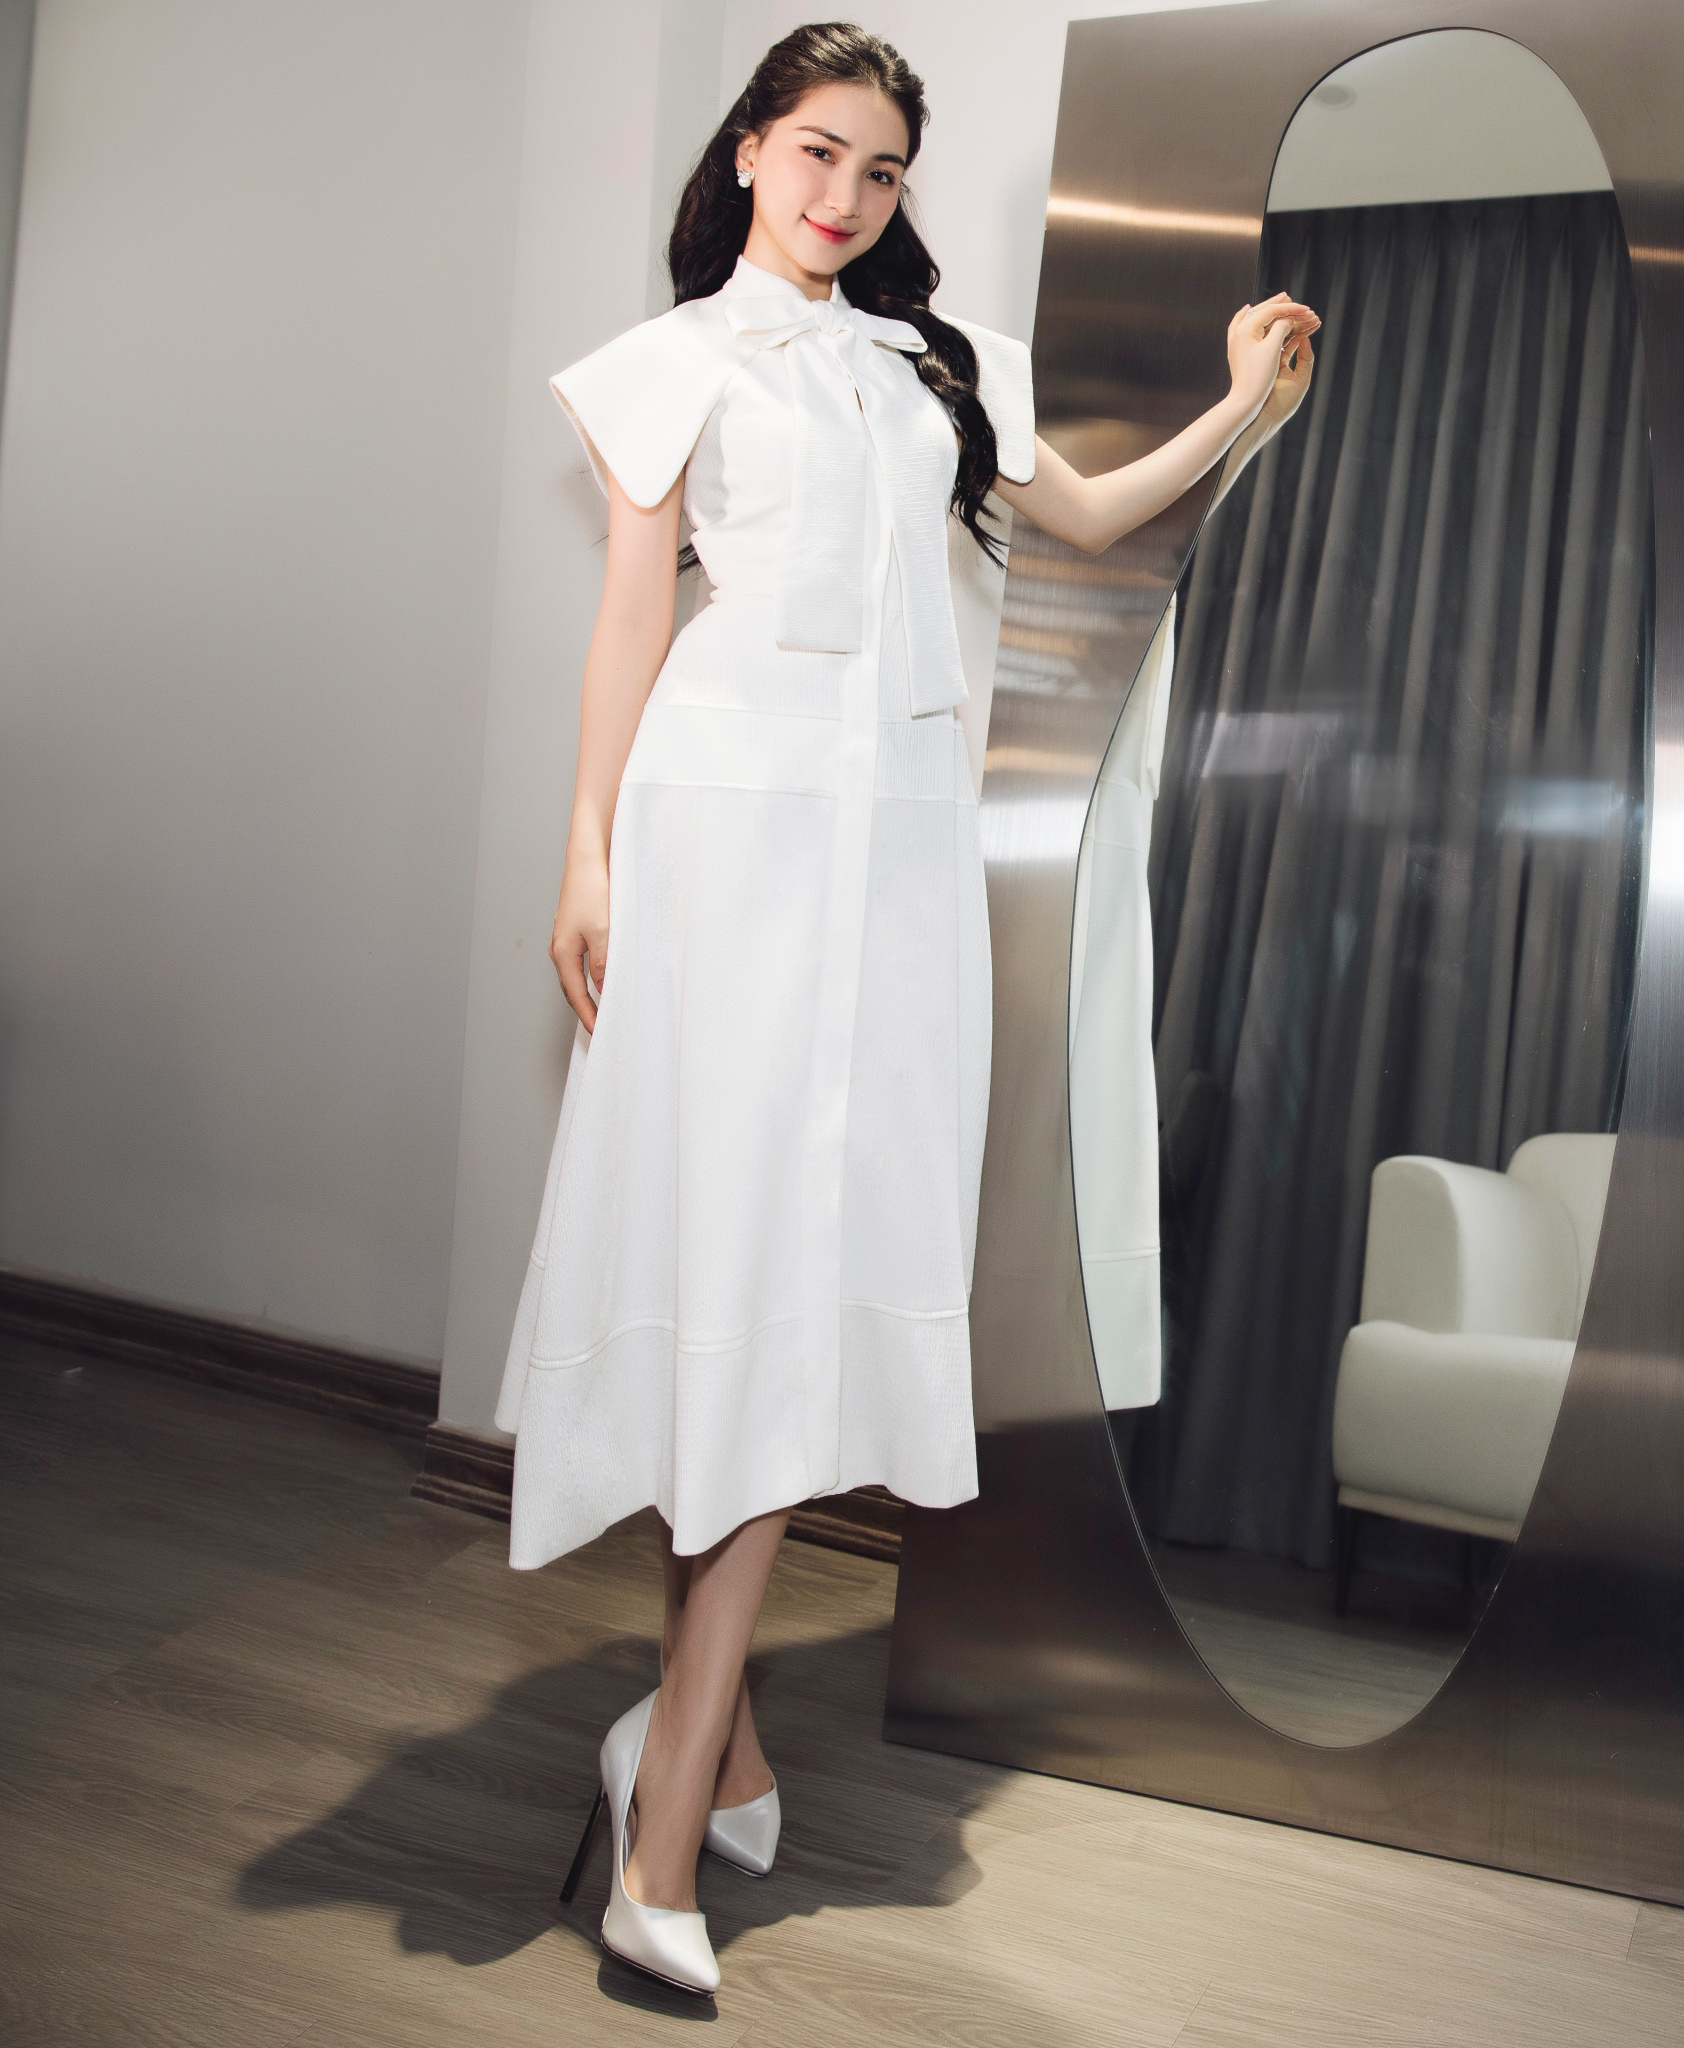 Lần xuất hiện mới nhất của Hoà Minzy khiến nhiều người bất ngờ, cô nàng mặc một chiếc váy trắng với phần vai cách điệu và cổ nơ ngọt ngào, nữ tính.